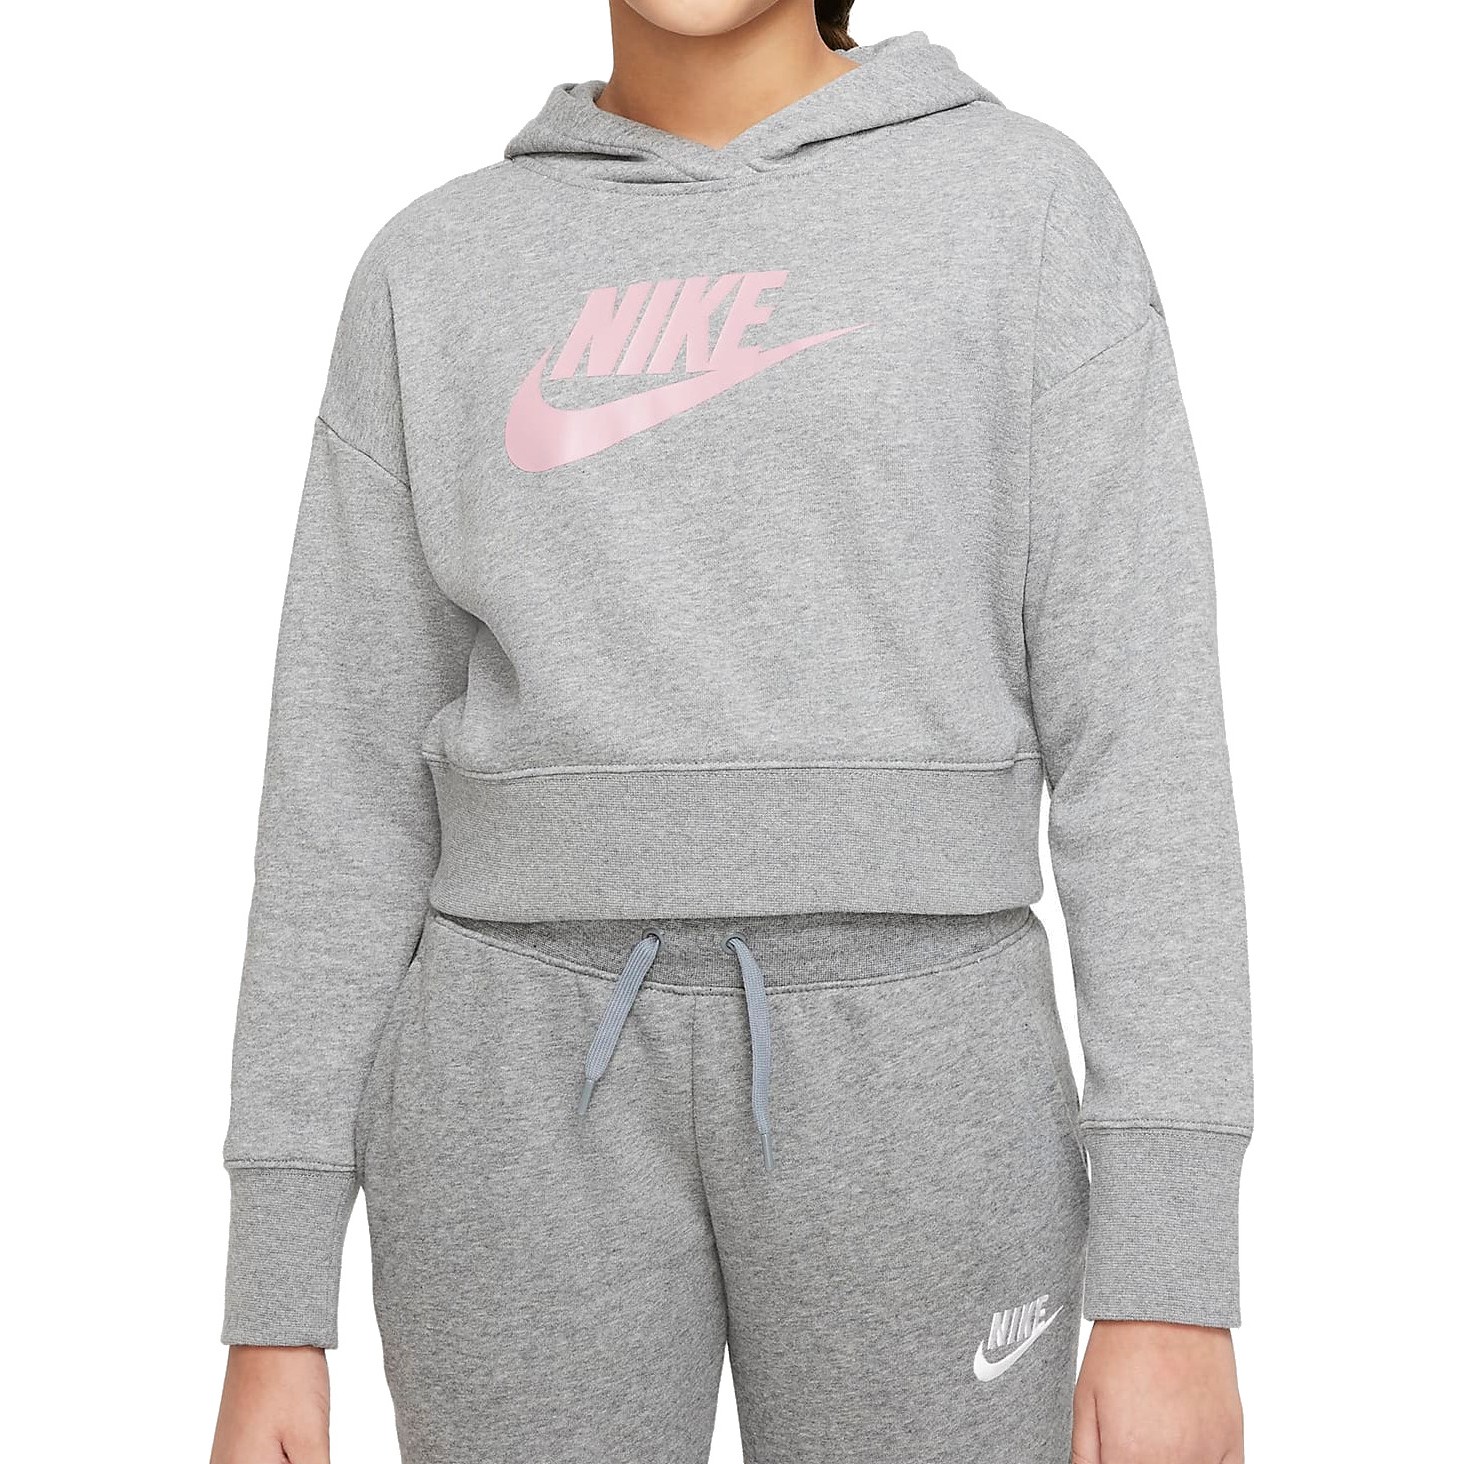 Produktbild von Nike Sportswear Club French Terry-Hoodie für ältere Kinder - carbon heather/pink DC7210-093